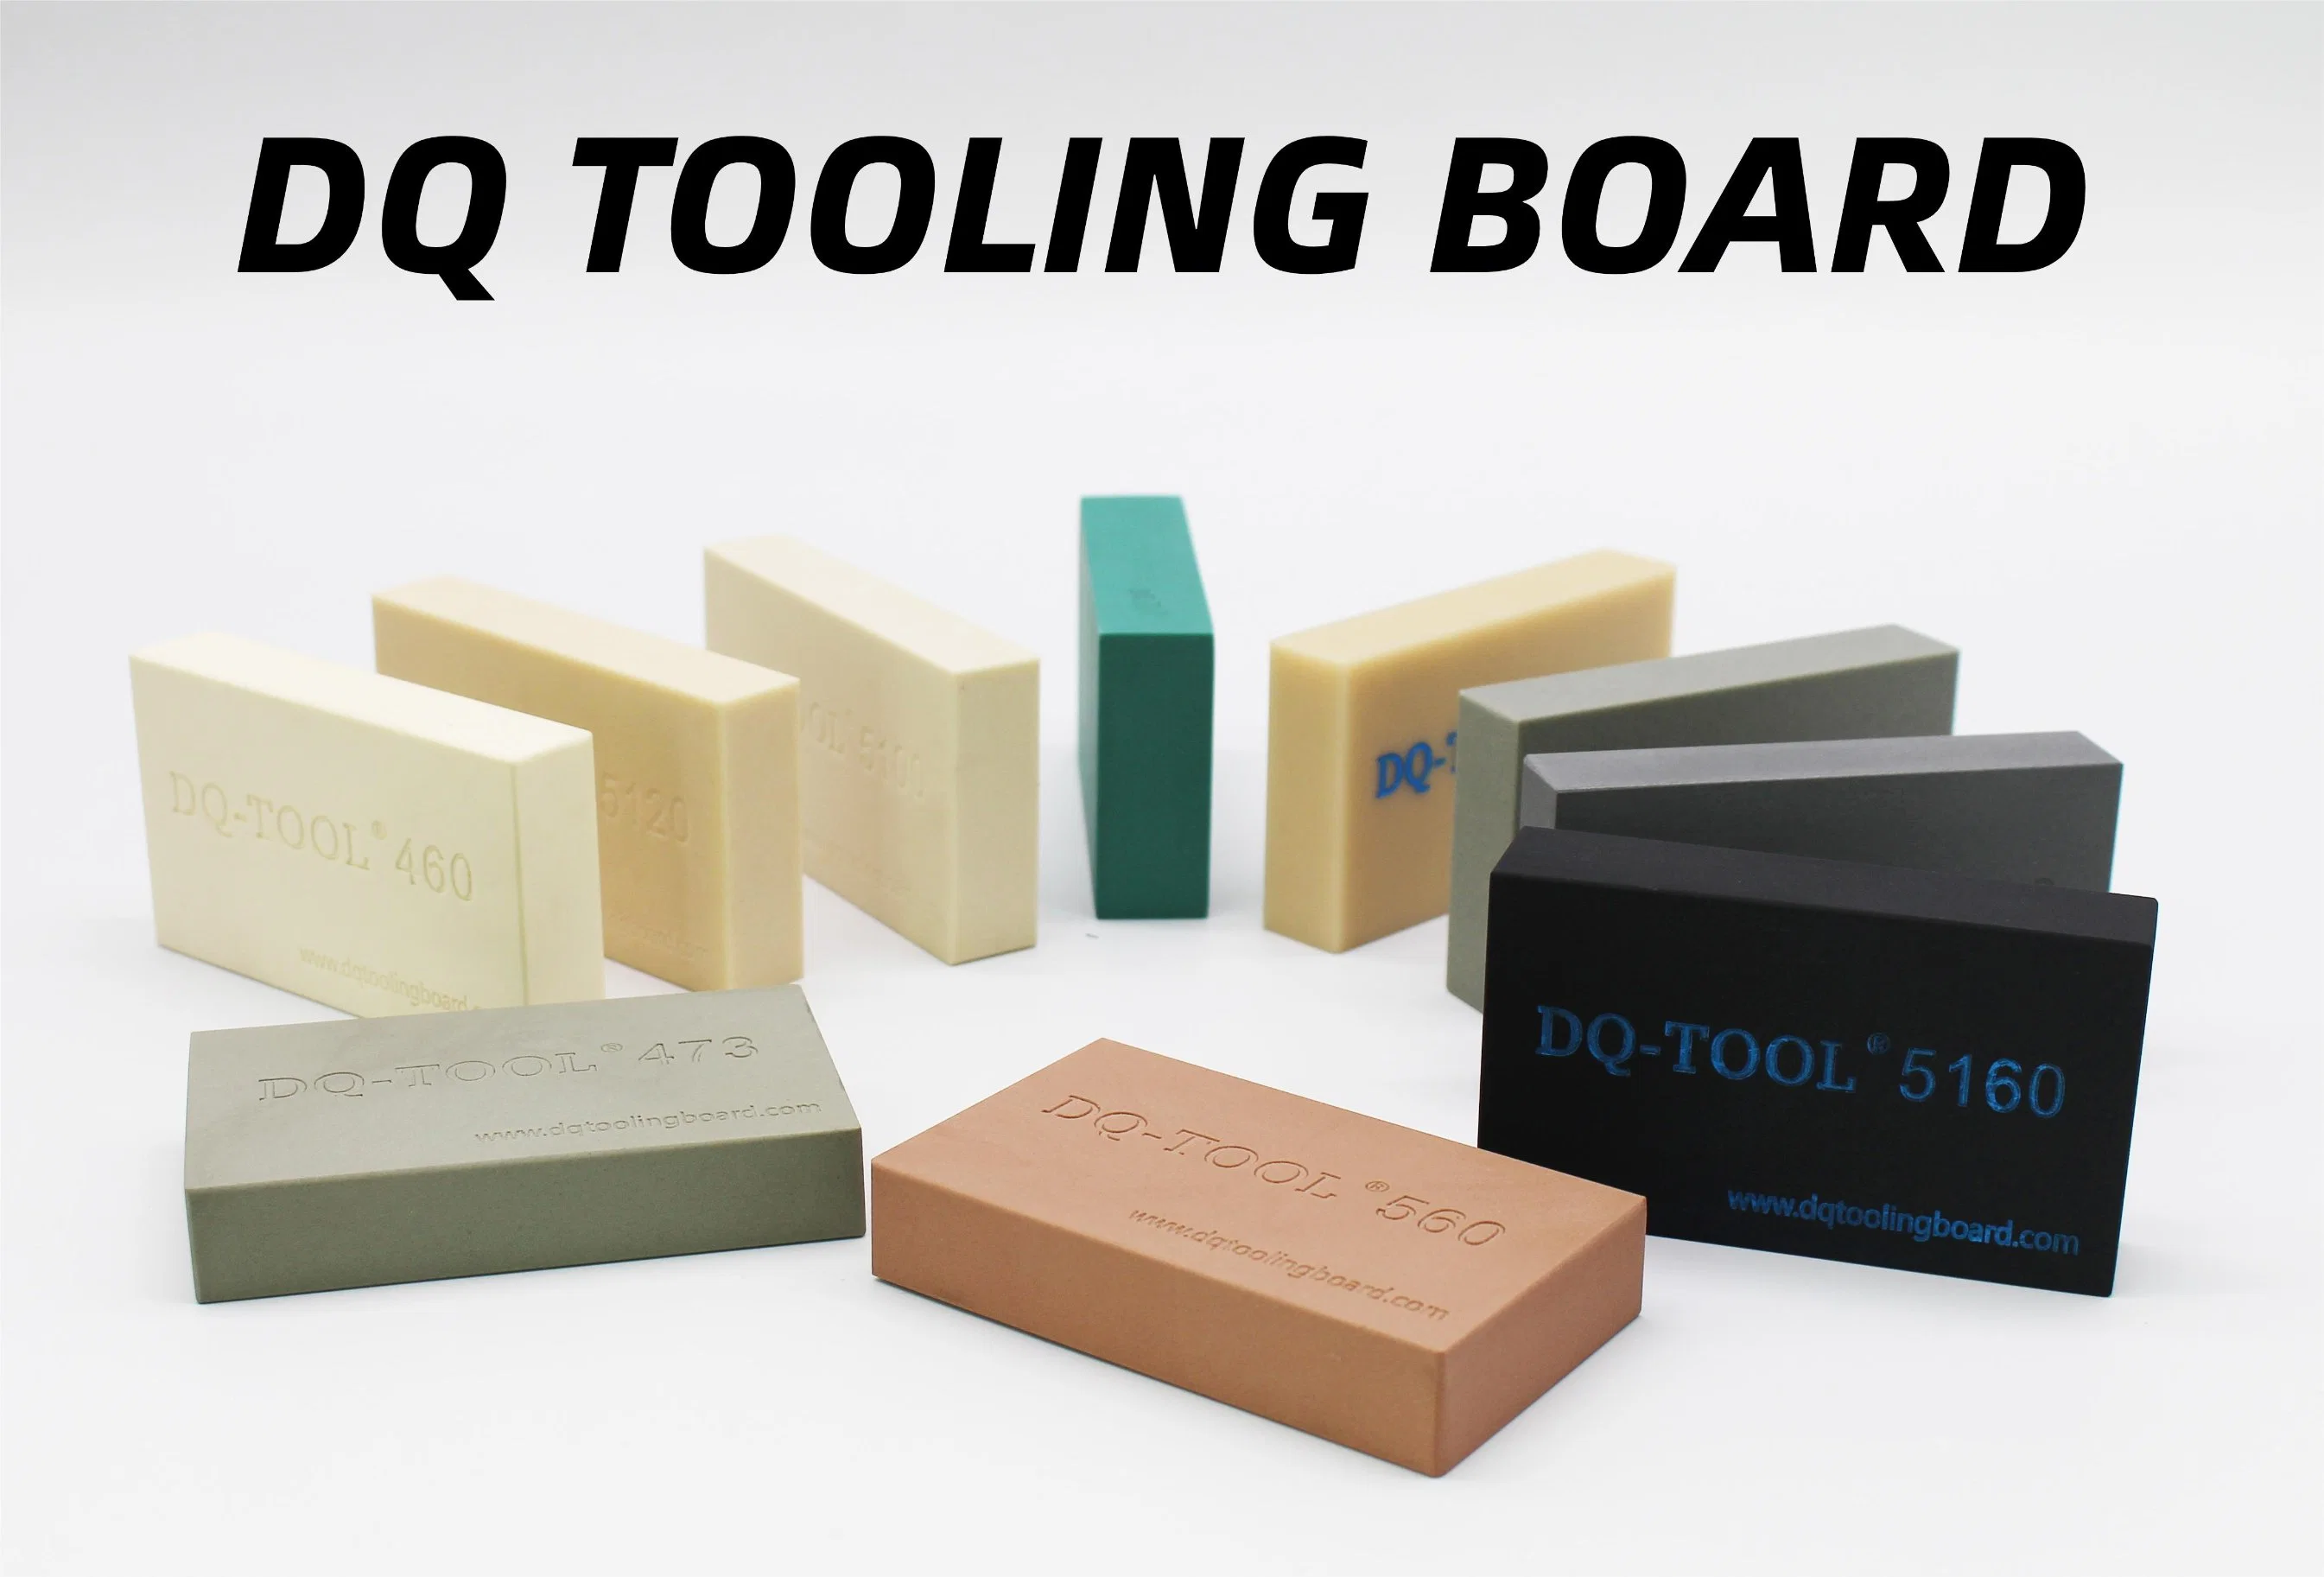 Dq-Tool Bonne qualité et planche à outils PU bon marché Sikablock Board Modèle de fonderie Obo pour l'industrie automobile Moule de fonderie Fixture de vérification.